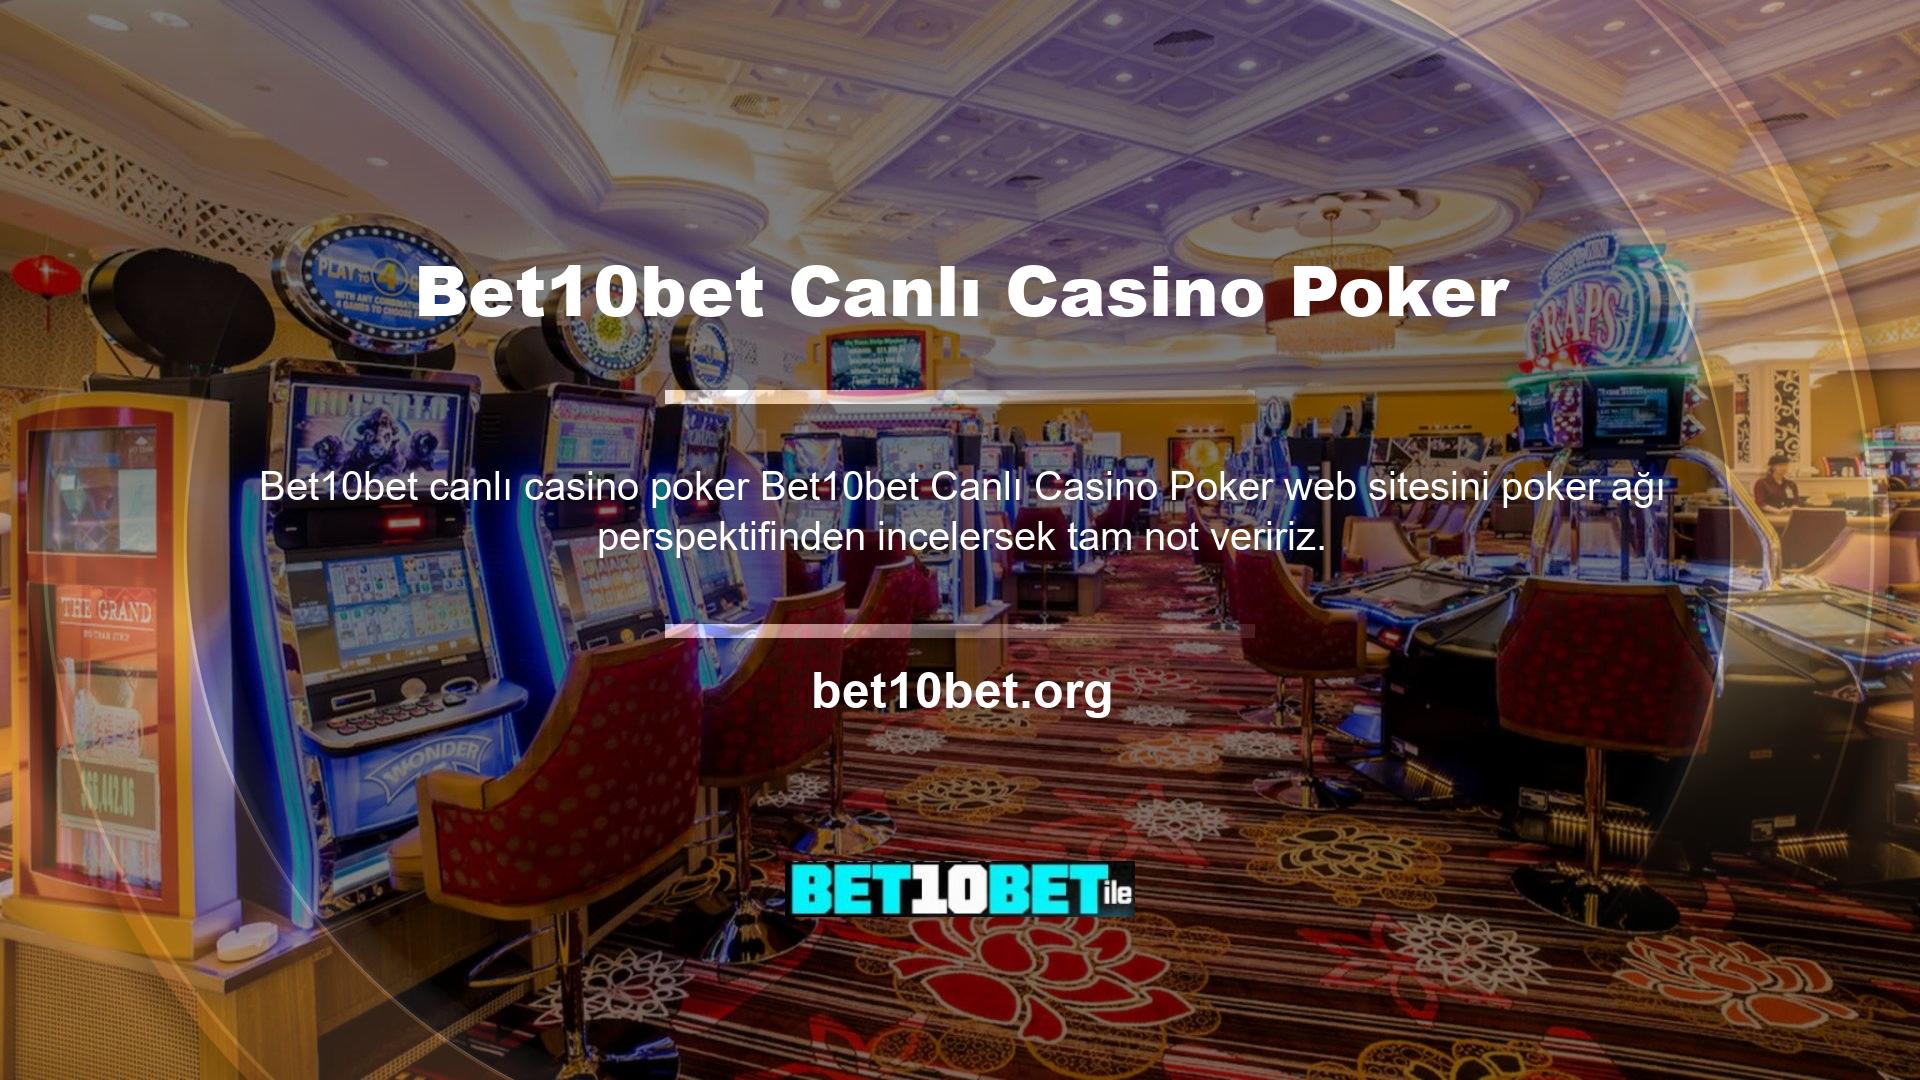 Bet10bet Canlı Casino'daki poker oyunları Ultimate Texas Hold'em, Texas Hold'em ve Three Card Poker gibi seçenekler içerir